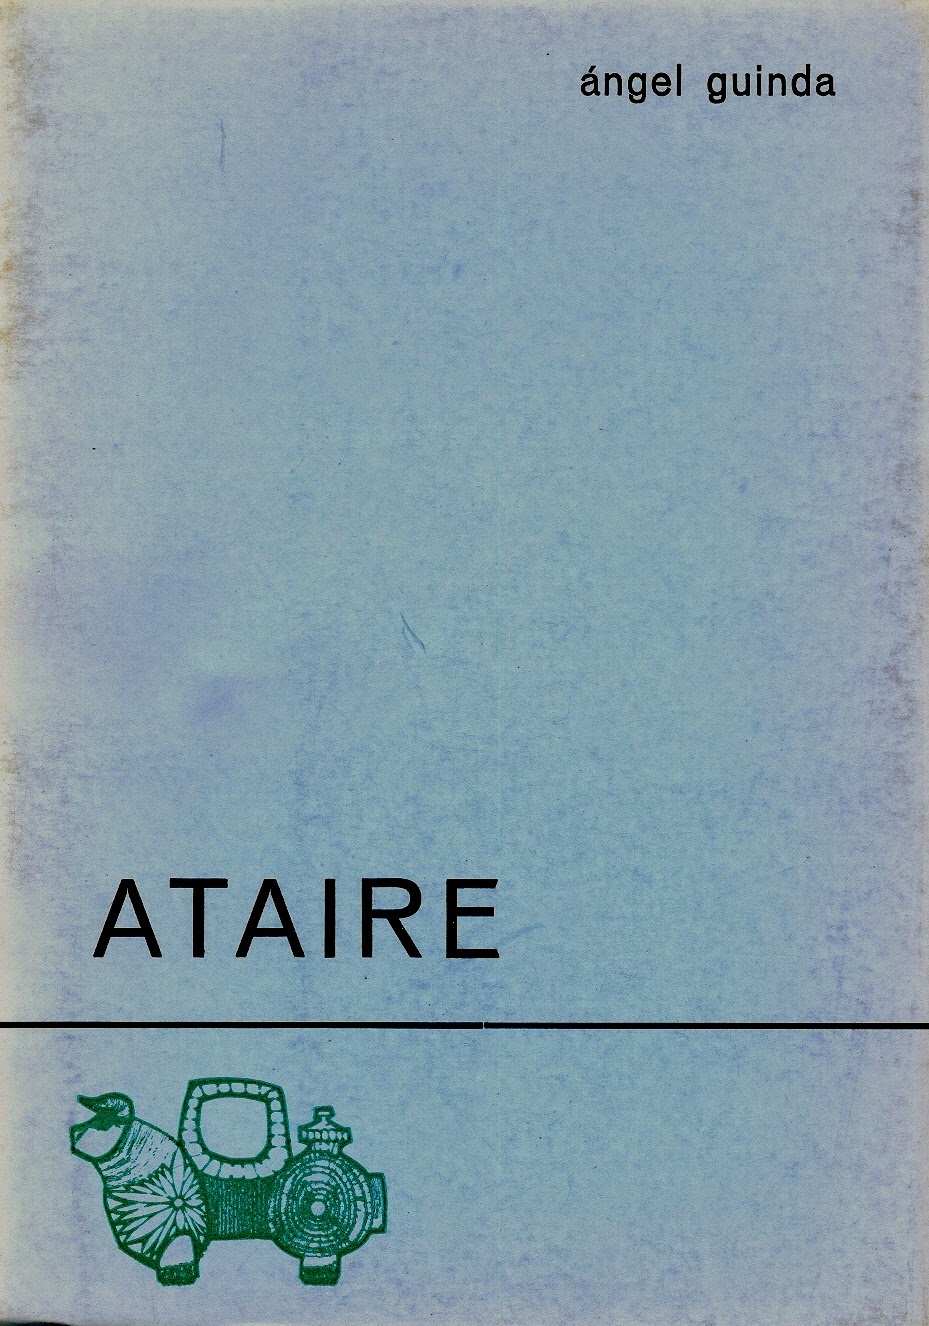  Ángel Guinda, "Ataire". Col. Azul de Poesía. Ed. El Toro de Barro, Carboneras del Guadazón, 1975. edicioneseltorodebarro@yahoo.es